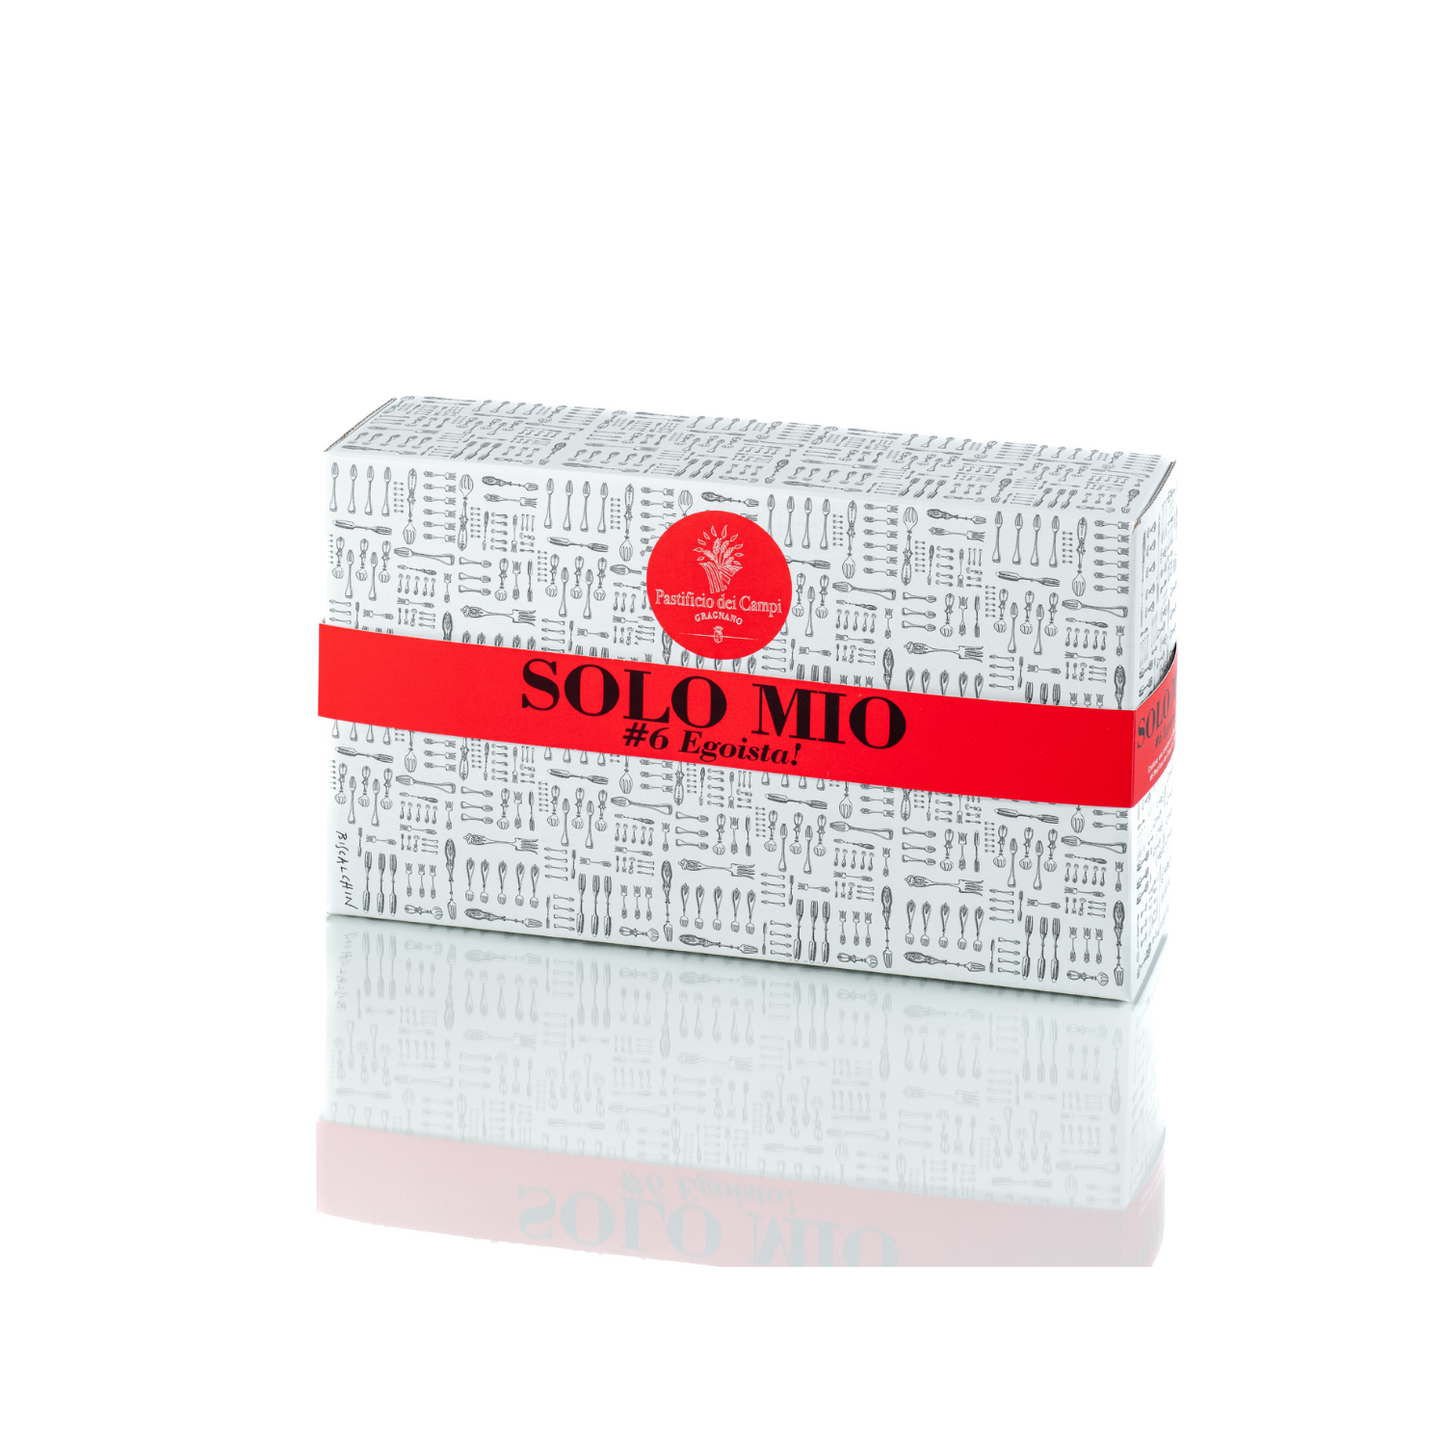 KIT Solo Mio - 6 Egoista - GIFT BOX